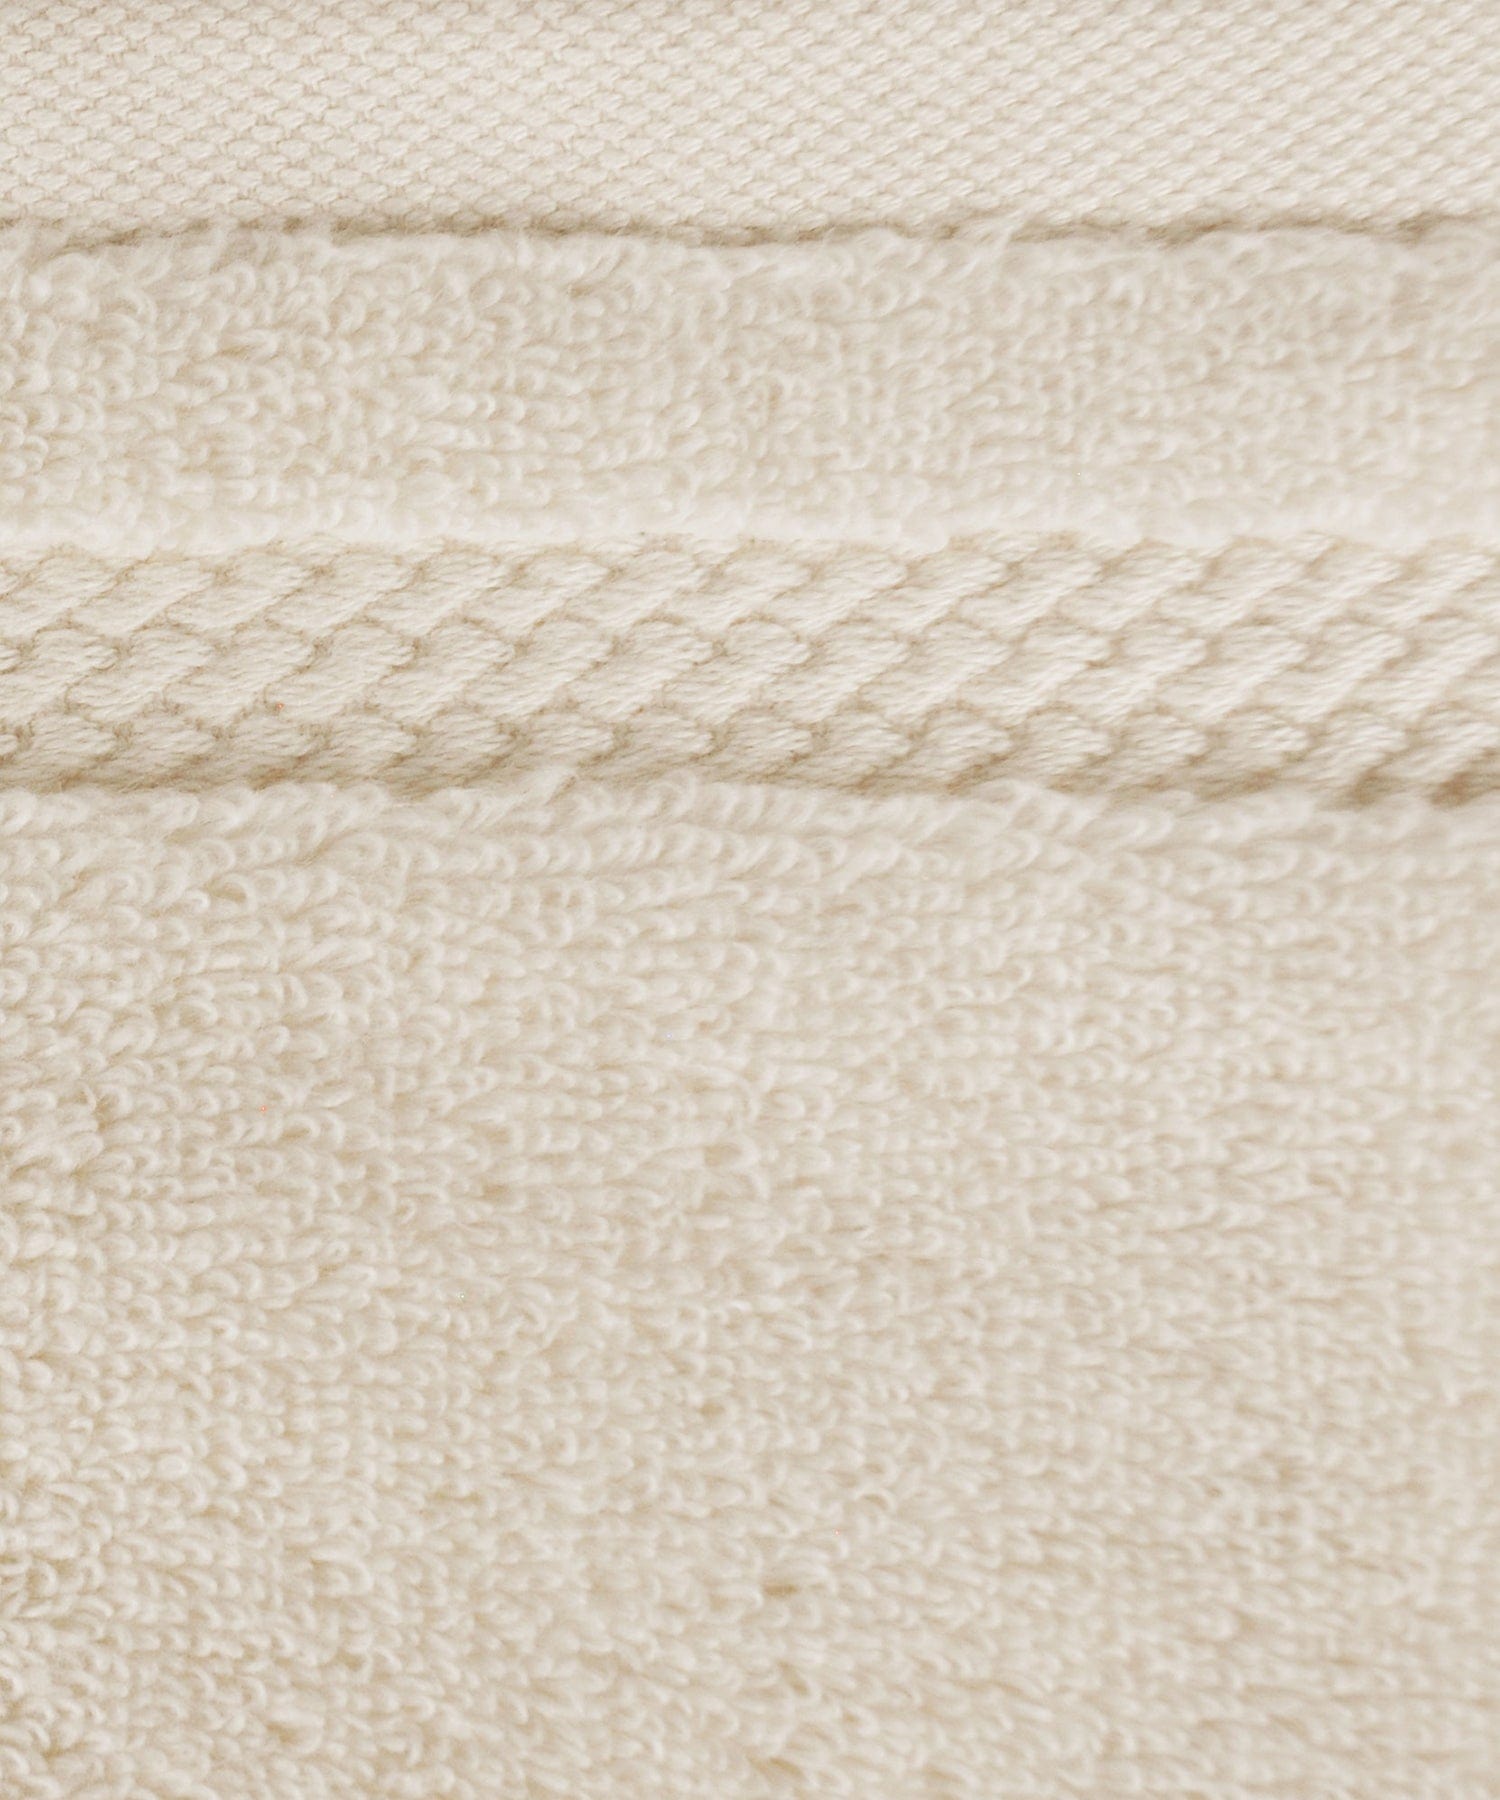 NECTORSOFT TOWEL, 625 GSM, 100% Cotton, 6PC Face Towel , LINEN